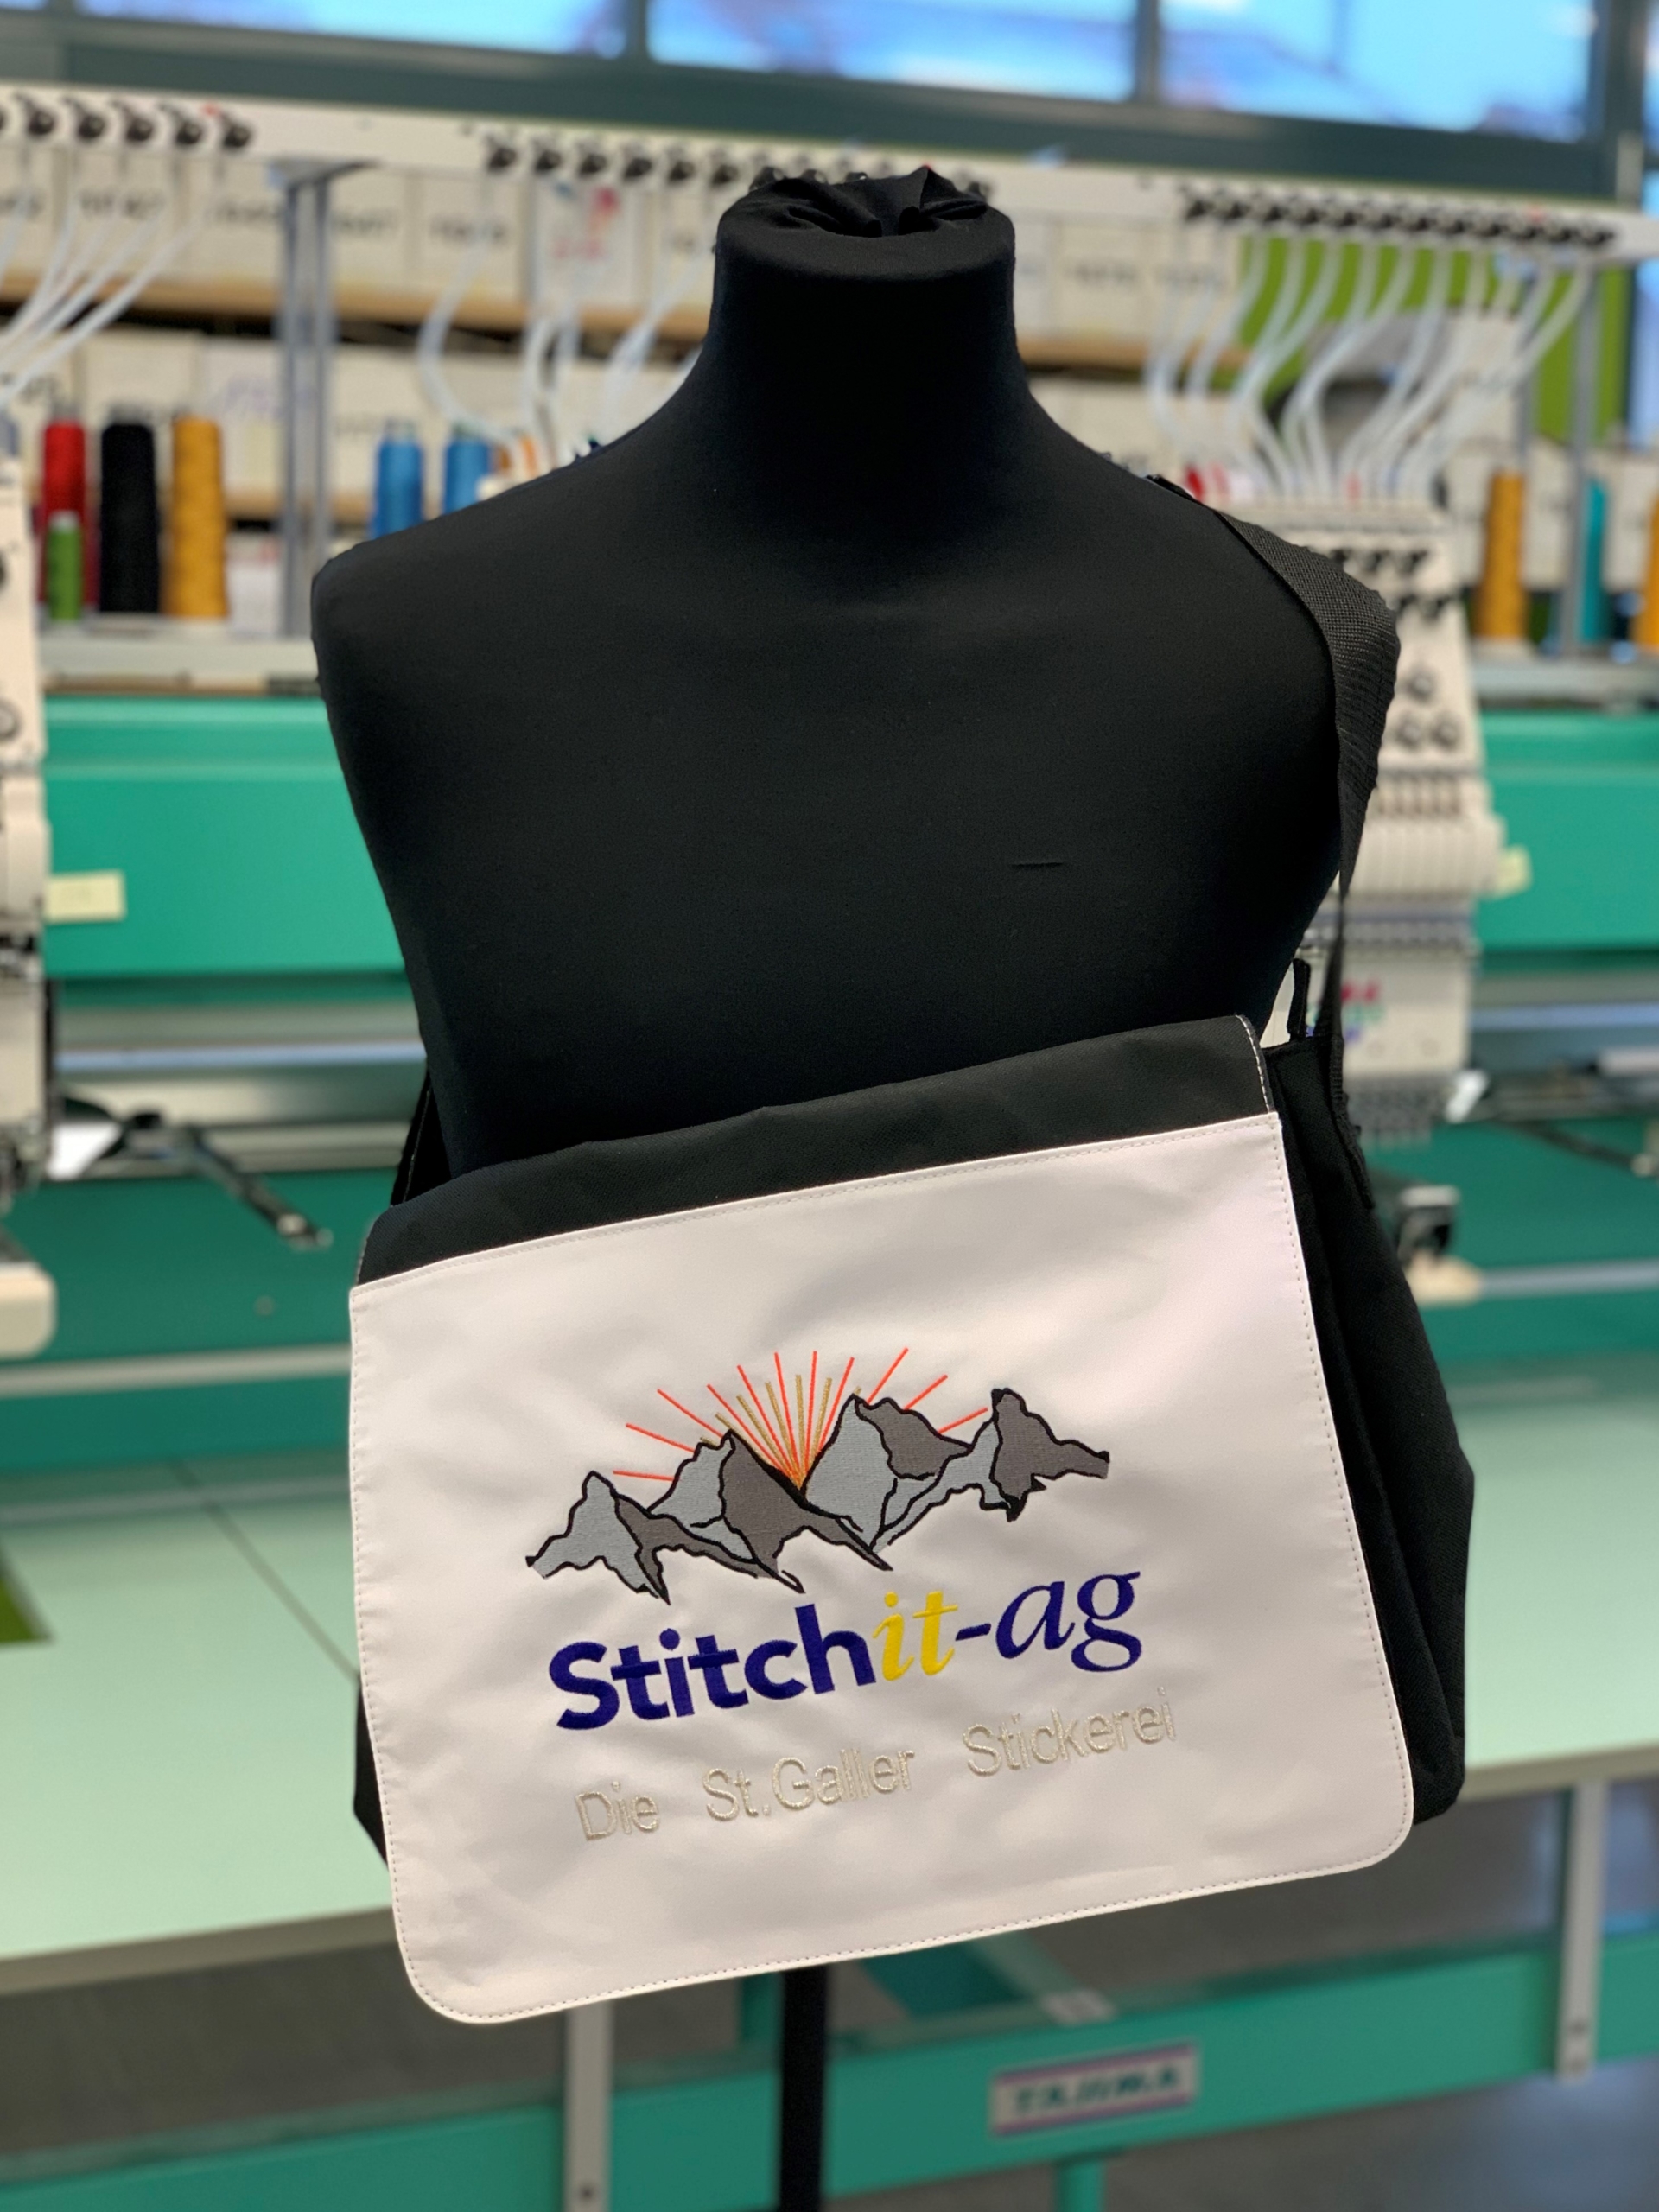 IMG E5844 scaled Stitchit AG - Die St. Galler Stickerei